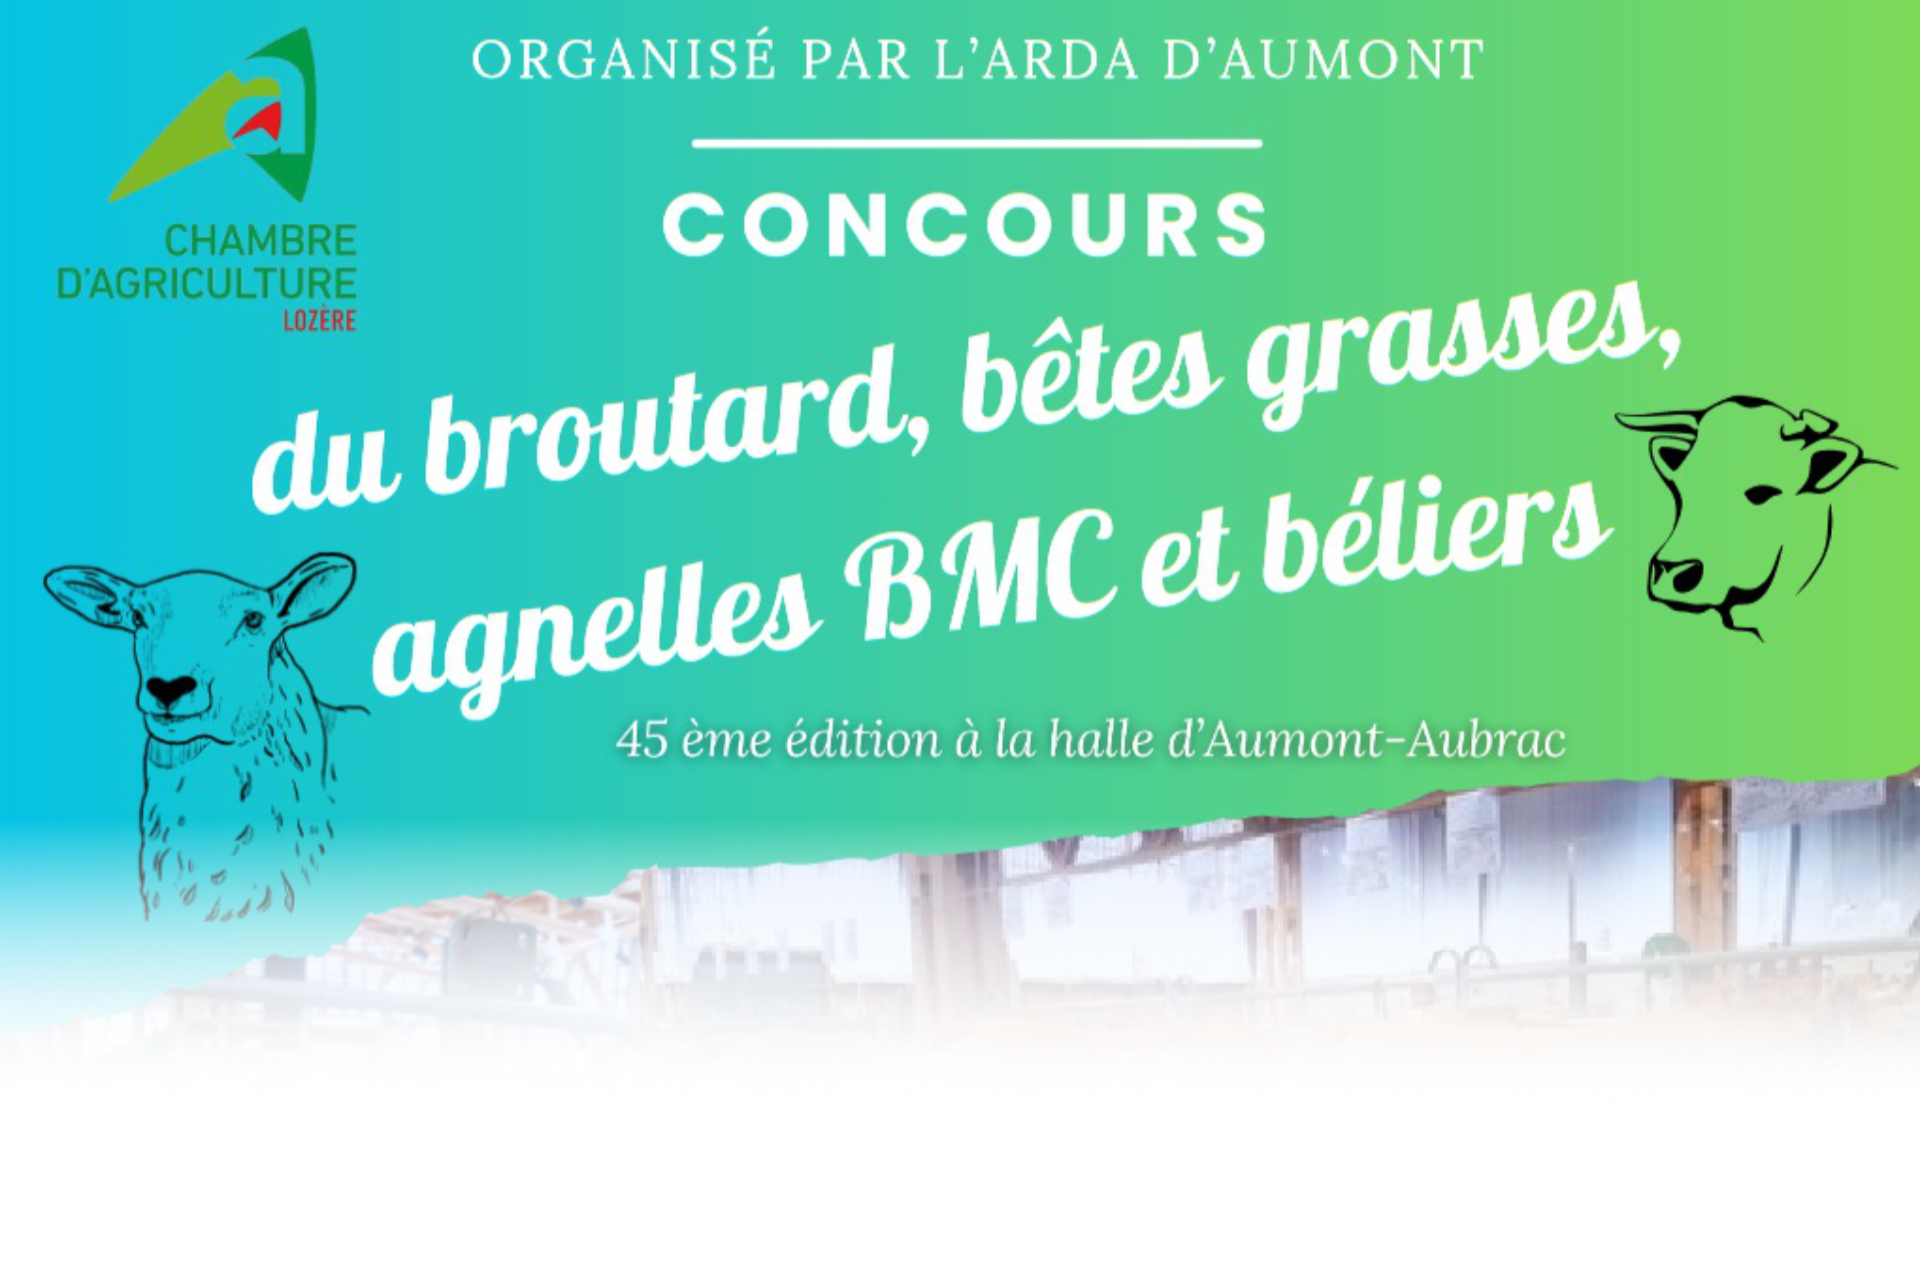 Concours du broutard à Aumont-Aubrac - Commune de Peyre en Aubrac